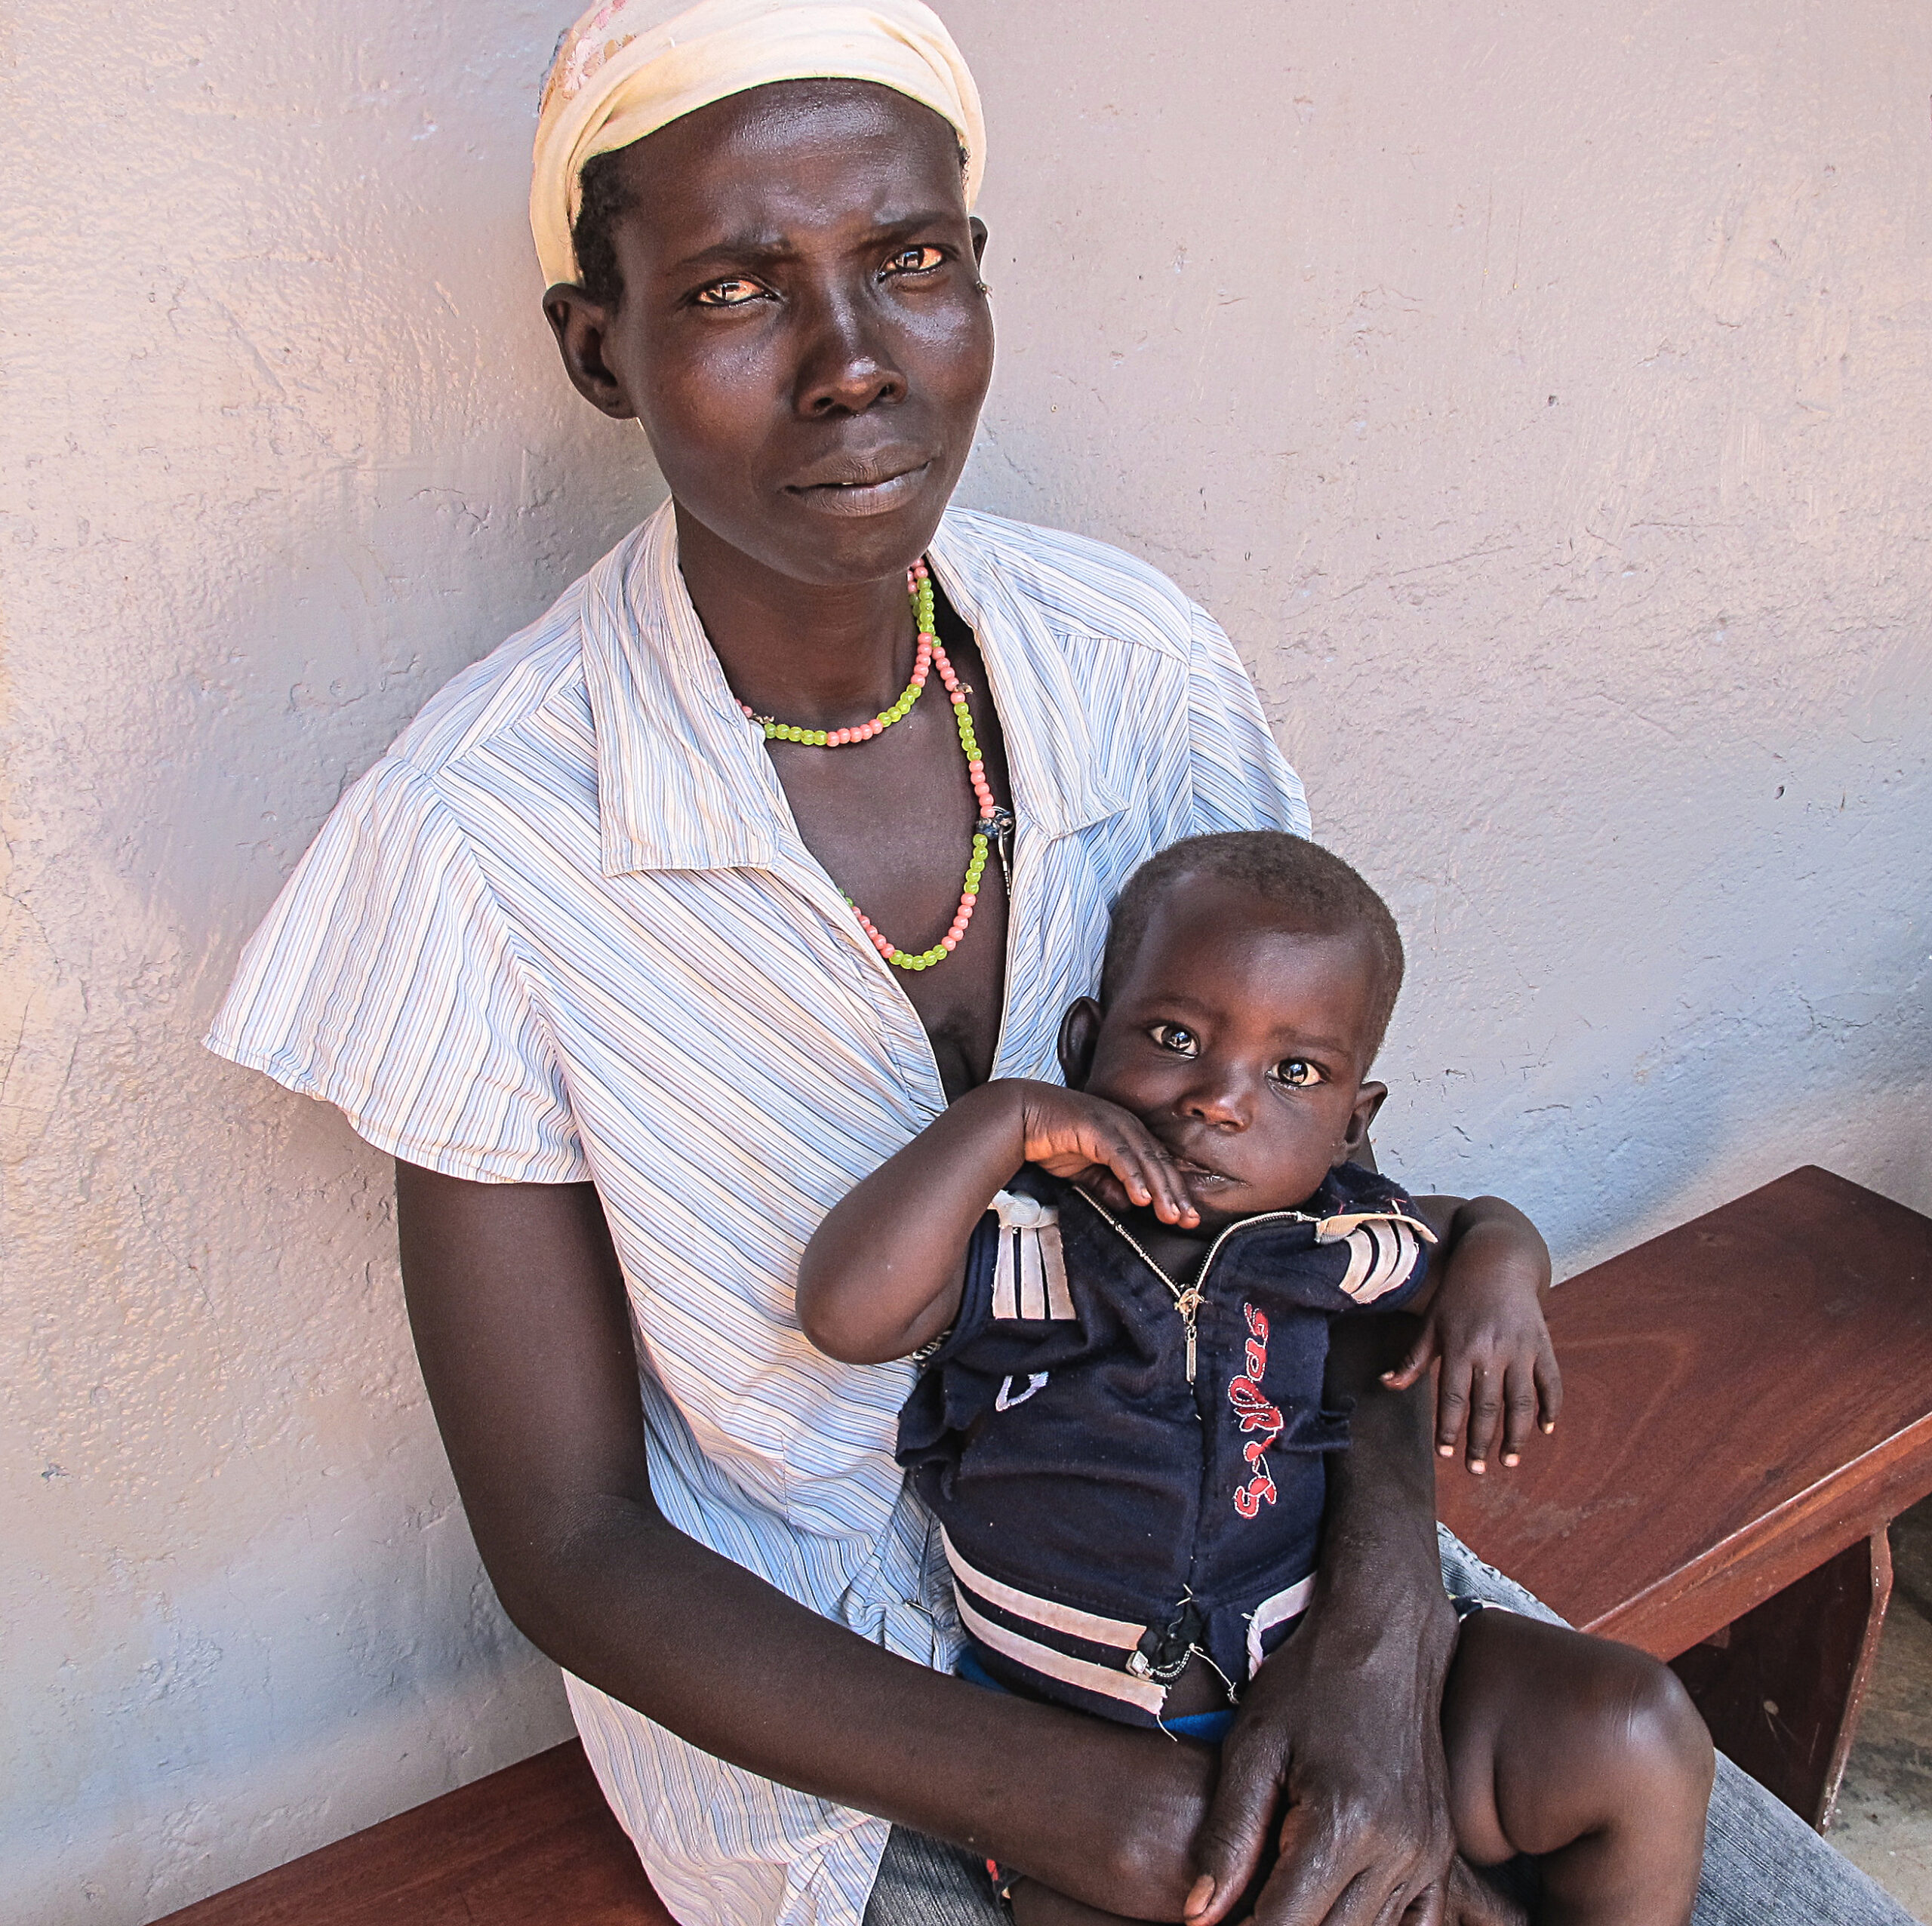 Maternity programs in Africa